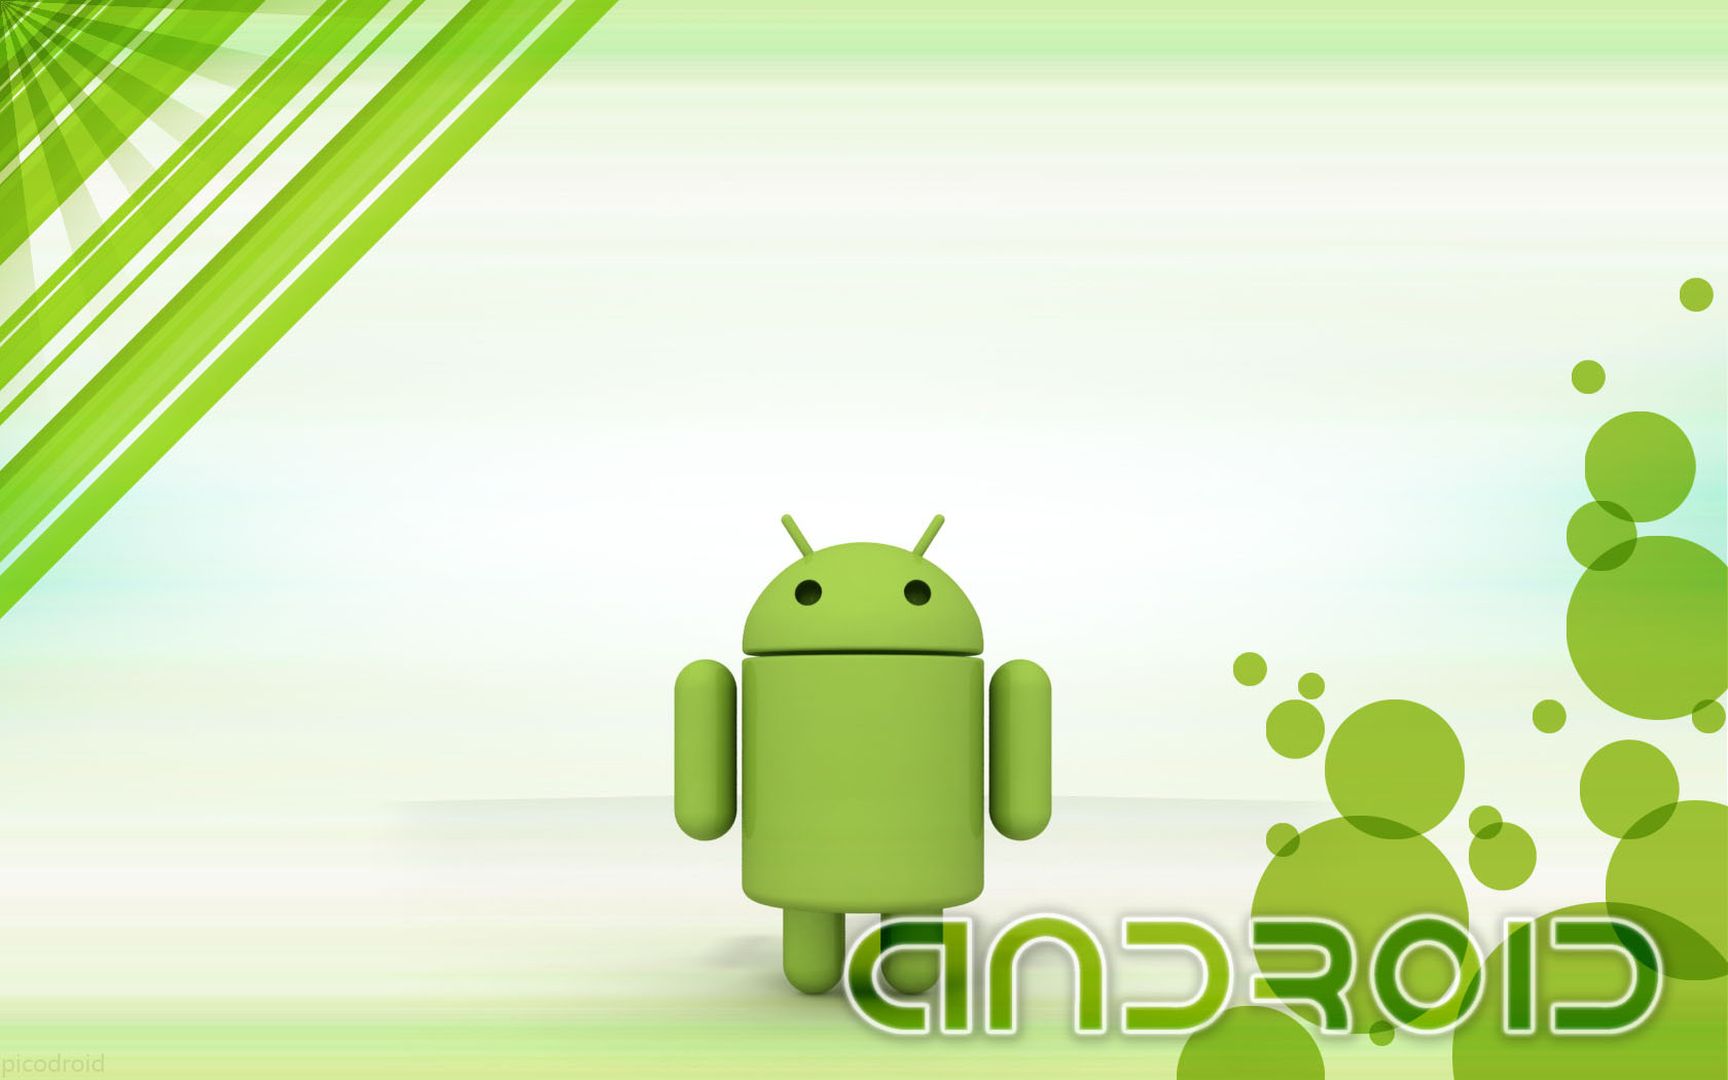 Android安卓系统环保绿色背景简约风格高清桌面大图 4 亿图全景图库手机版